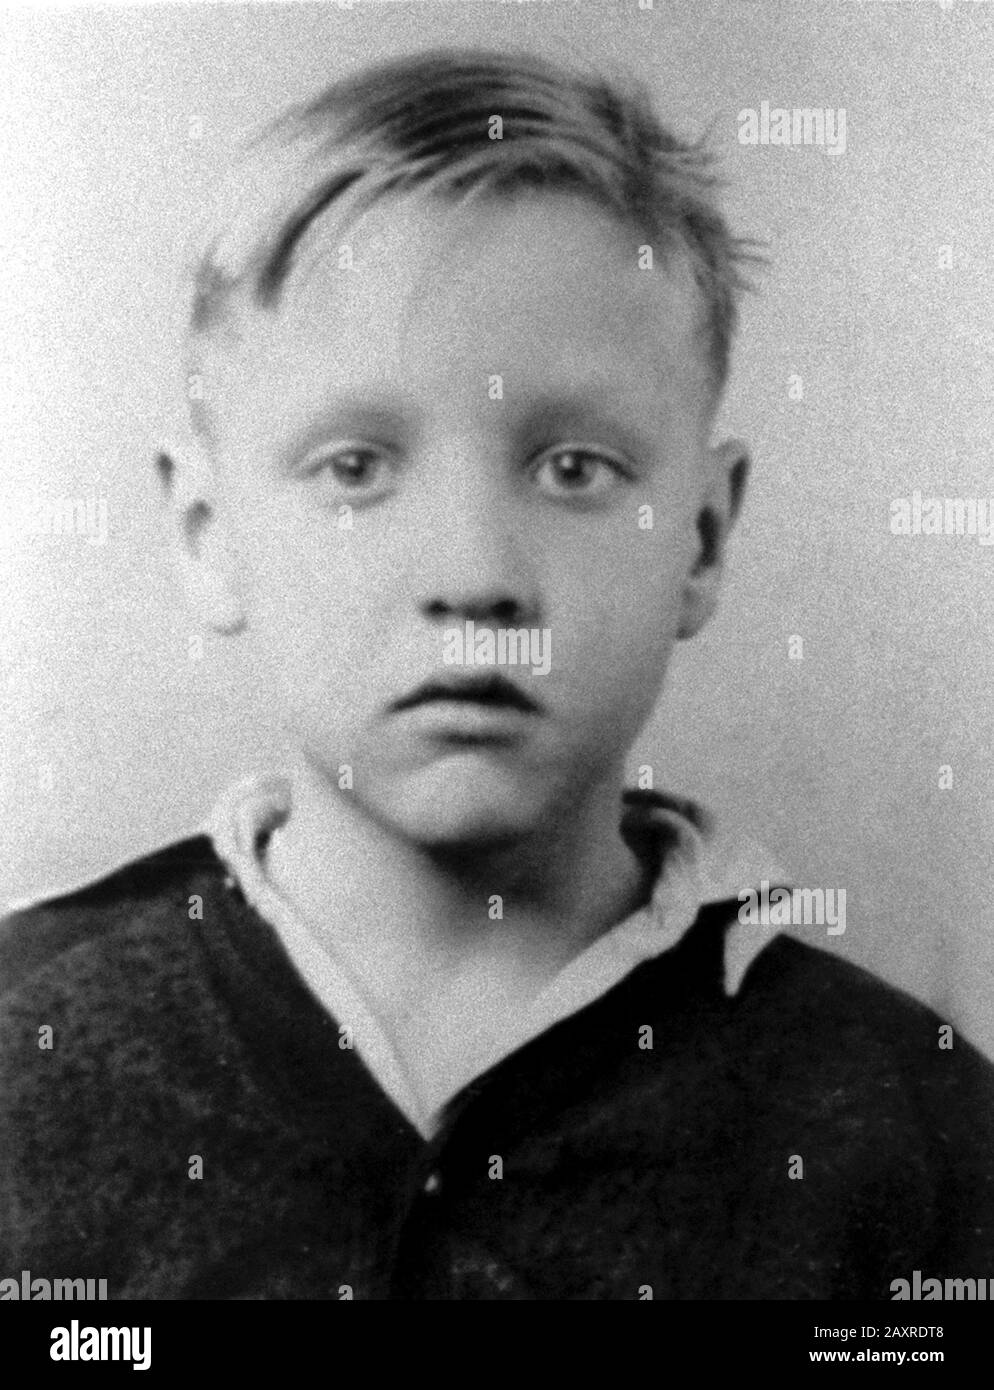 1945 Ca, Tupelo, USA : la chanteuse de rock'n Roll la plus célèbre ELVIS PRESLEY ( 1935 - 1977 ) quand était un jeune garçon . Photographe undentifié. - MUSIQUE - MUSICA - ROCK - HISTOIRE - FOTO STORICHE - quand était un enfant - enfants - célébrités célébrité - célébrité personaggi famosi da bambini - bambini - enfants - infanzia - enfance -- ARCHIVIO GBB Banque D'Images